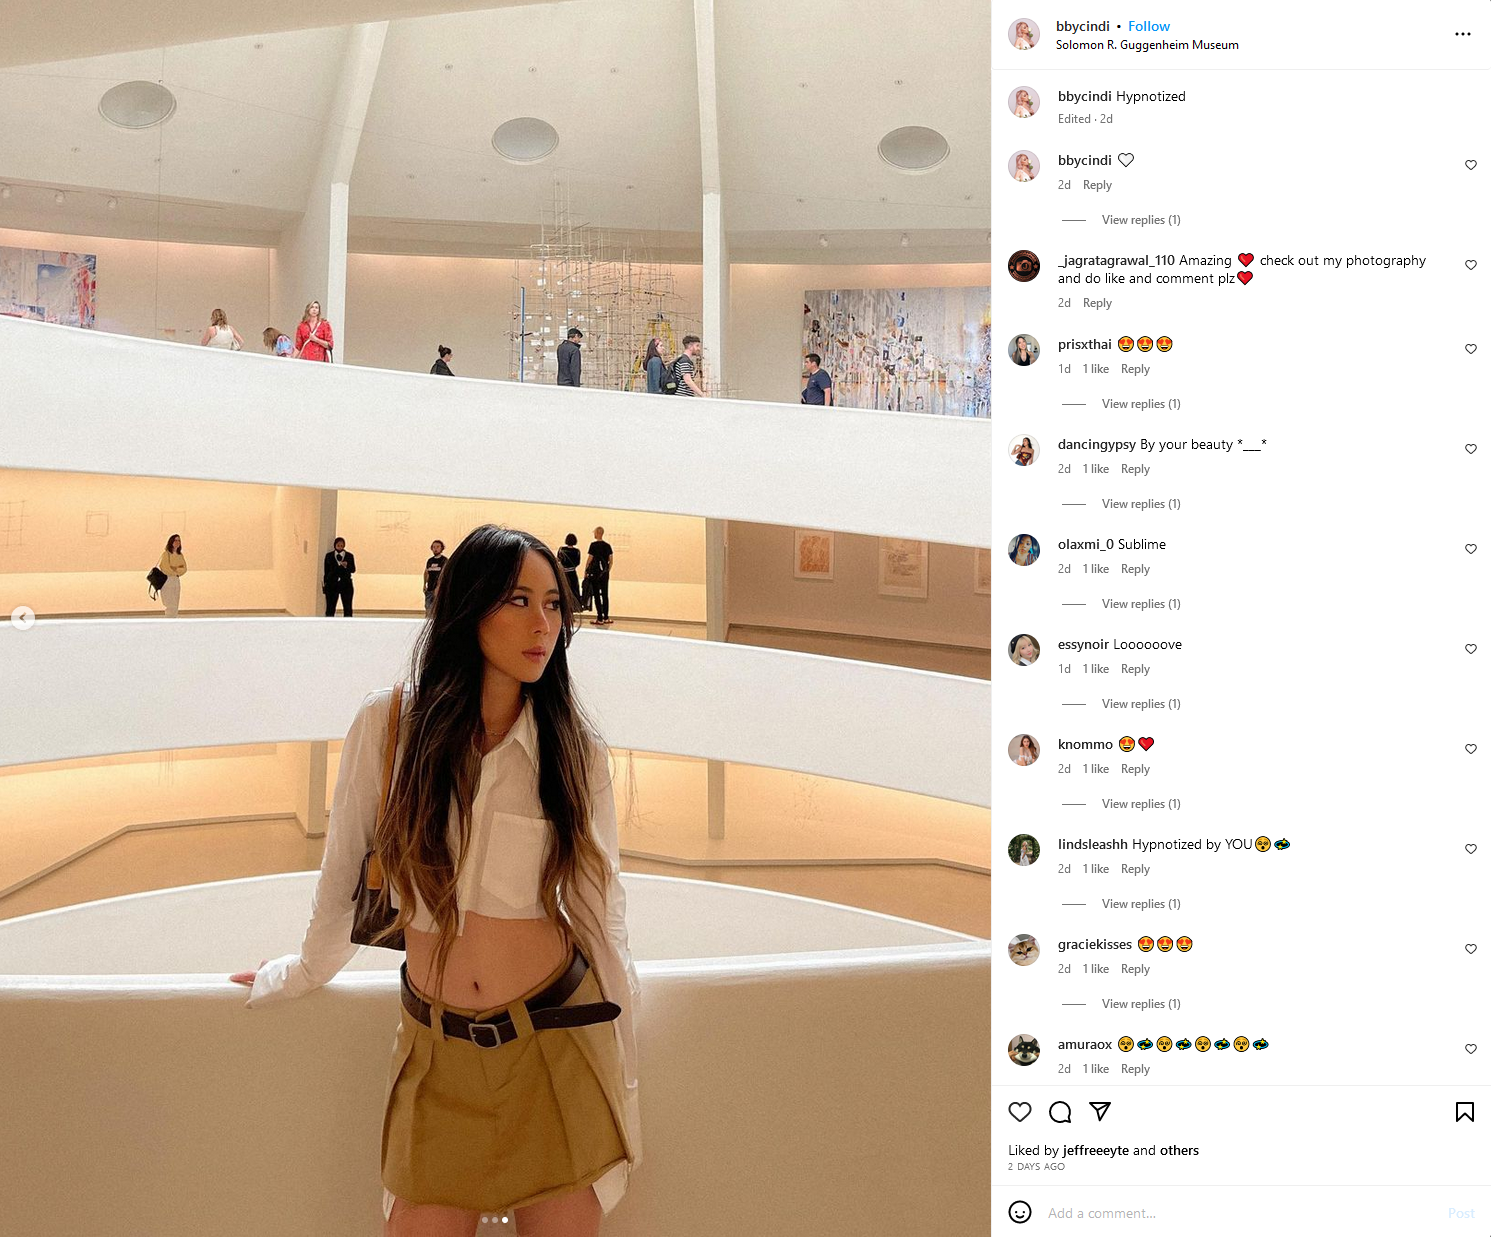 Guggenheim Museum by @bbycindi